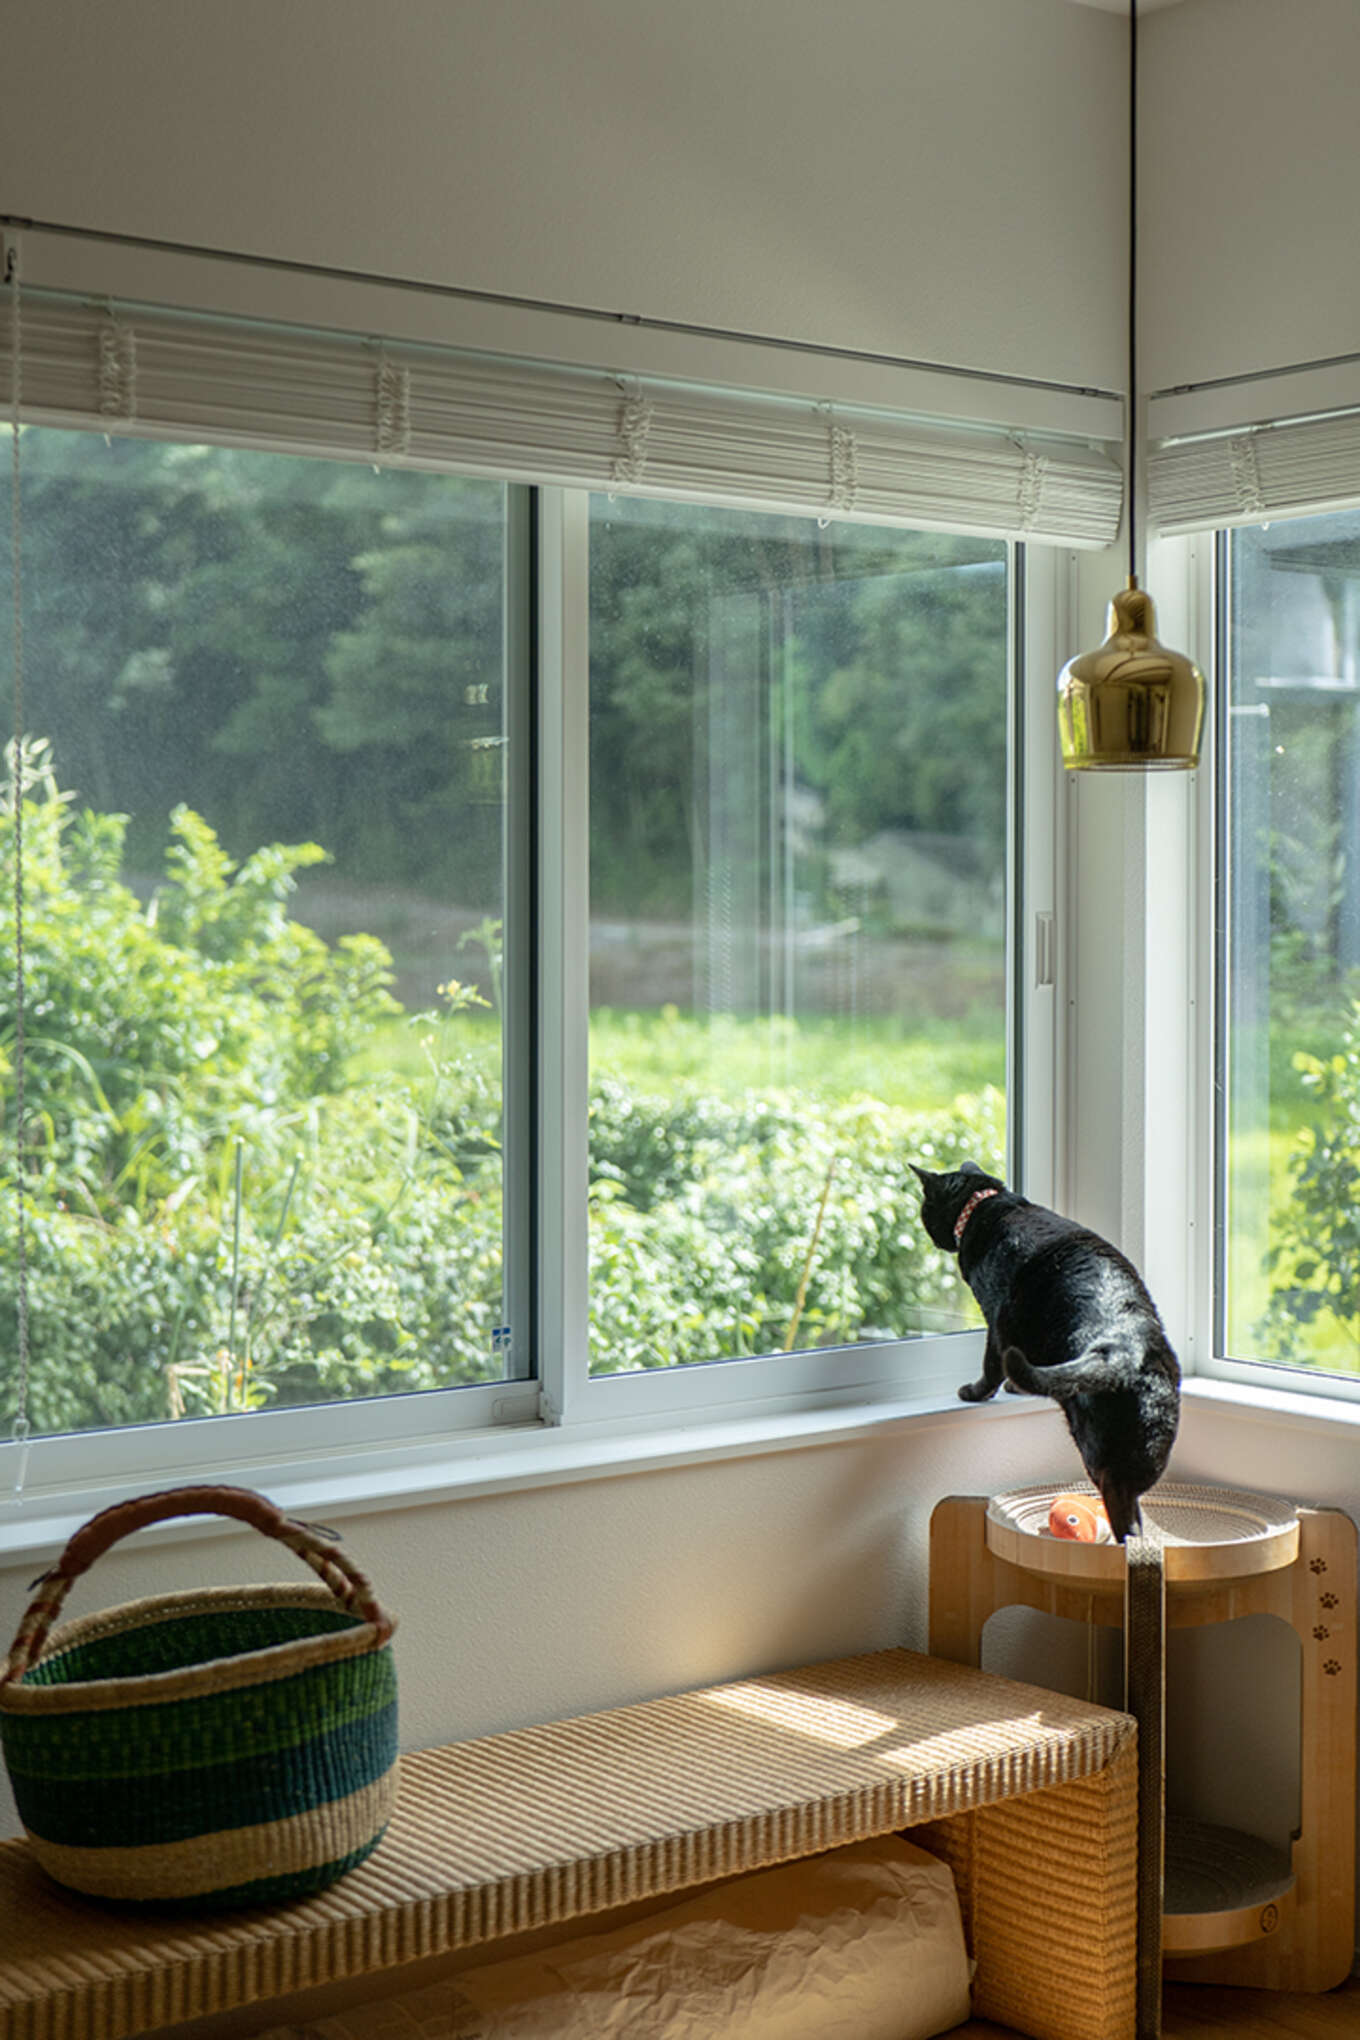 窓から外を見る猫